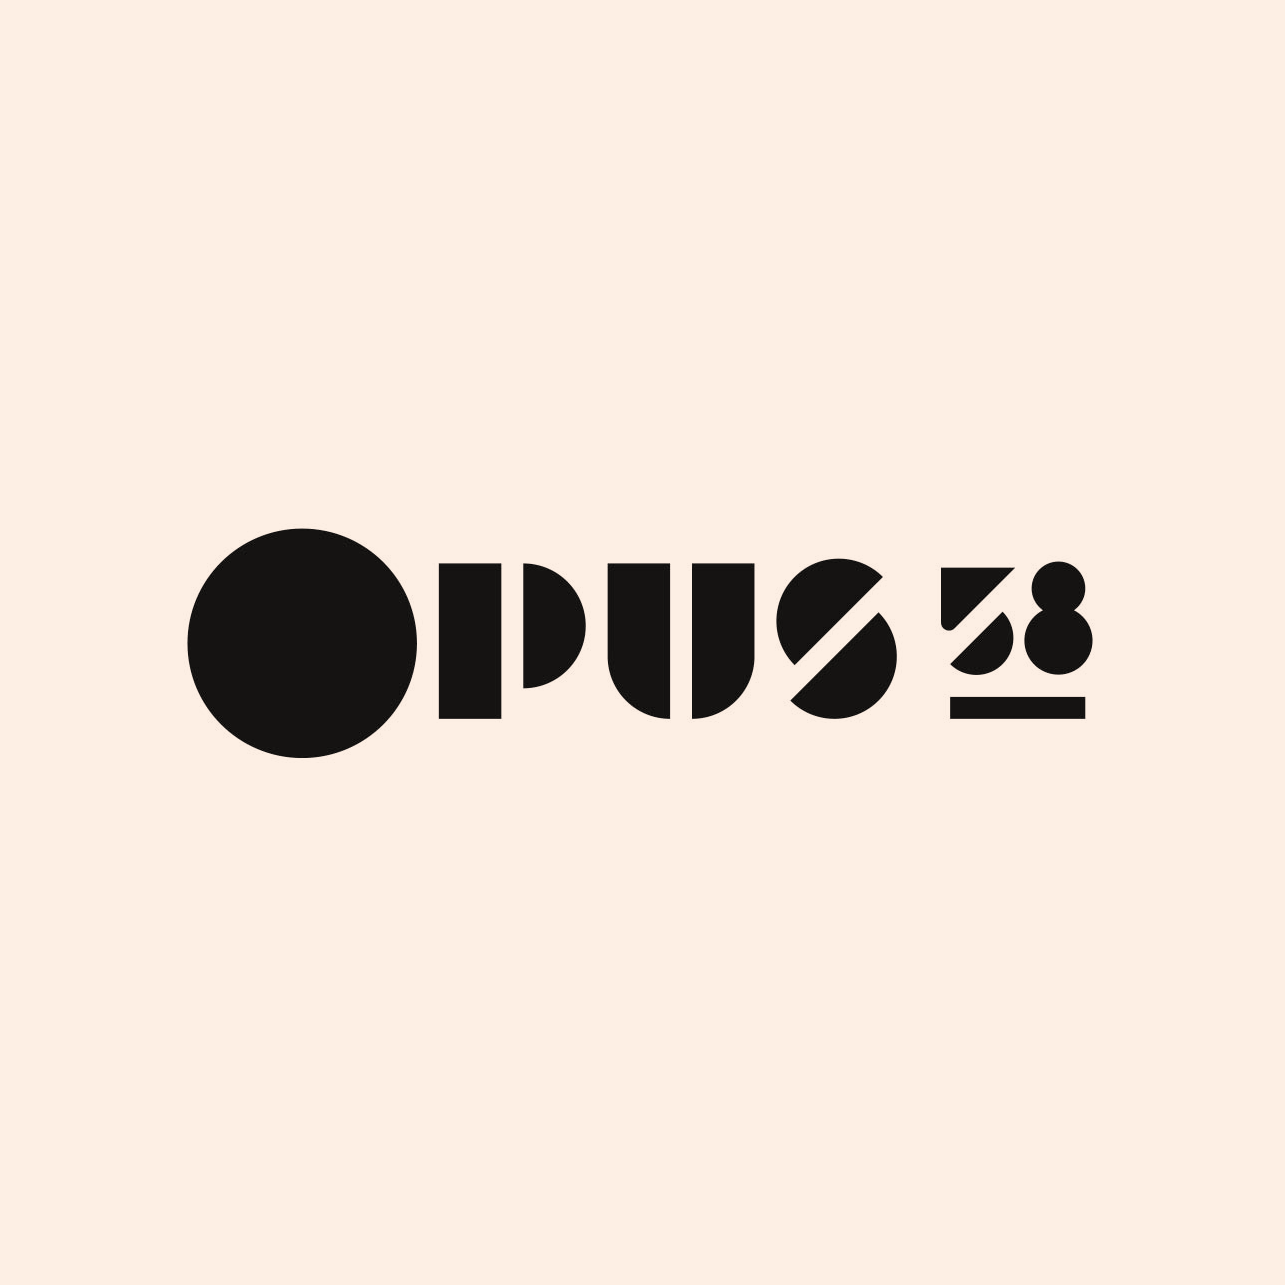 3 version du logo system Opus 58